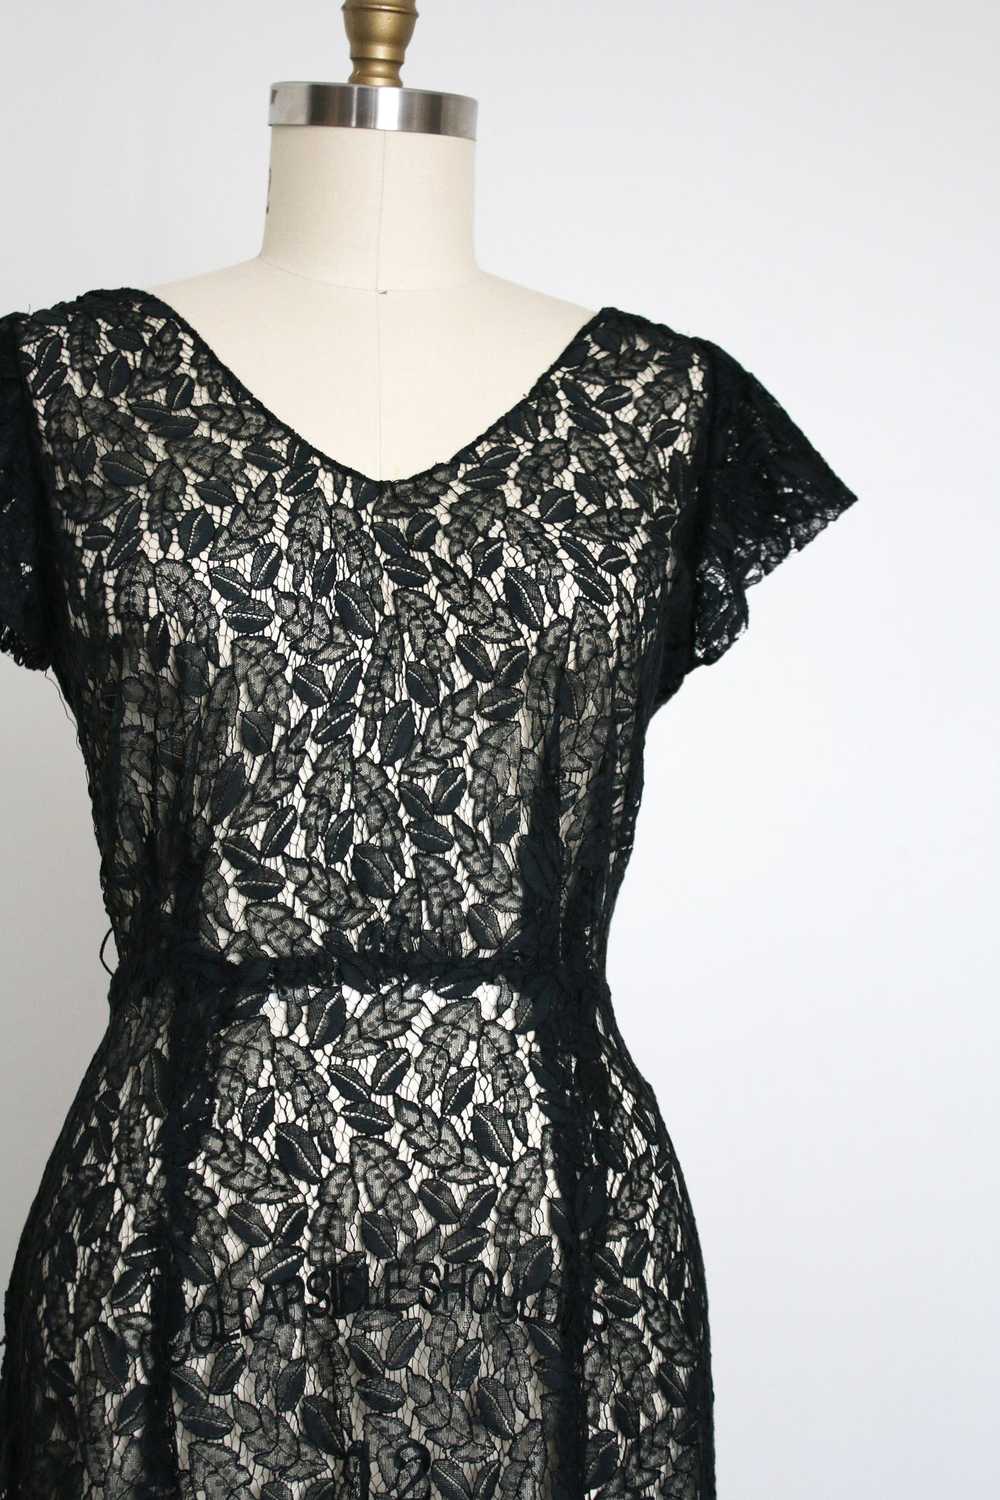 vintage 1930s black leaf lace dress {L} - image 3